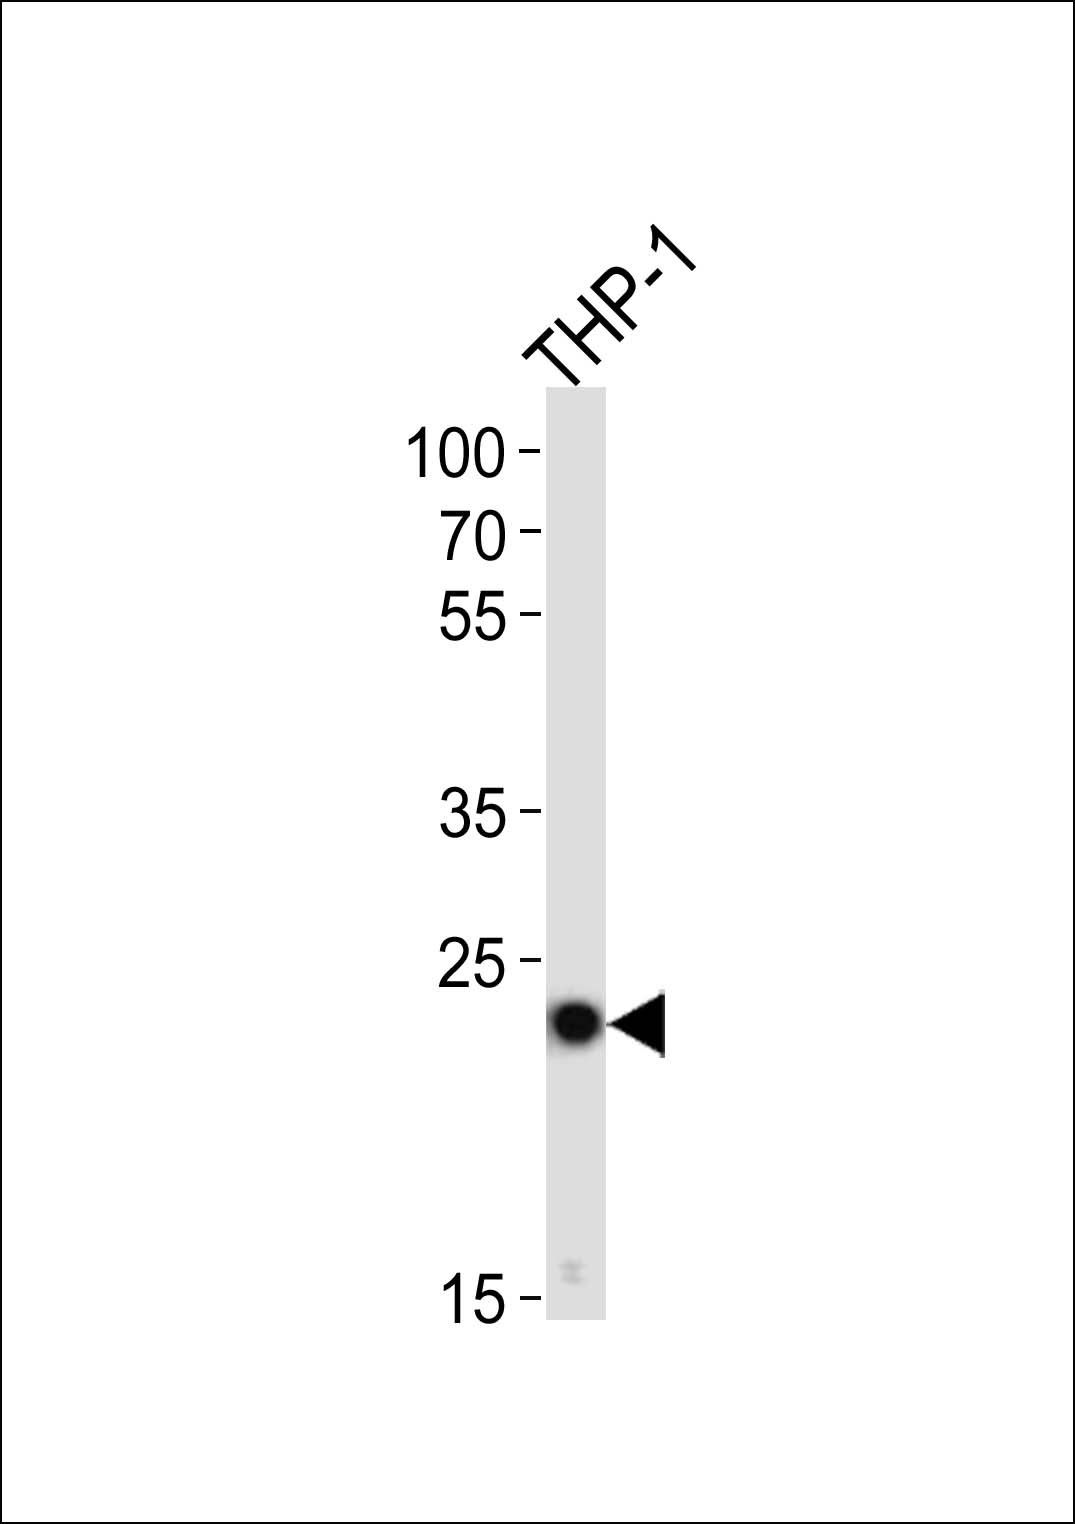 TMS1 antibody